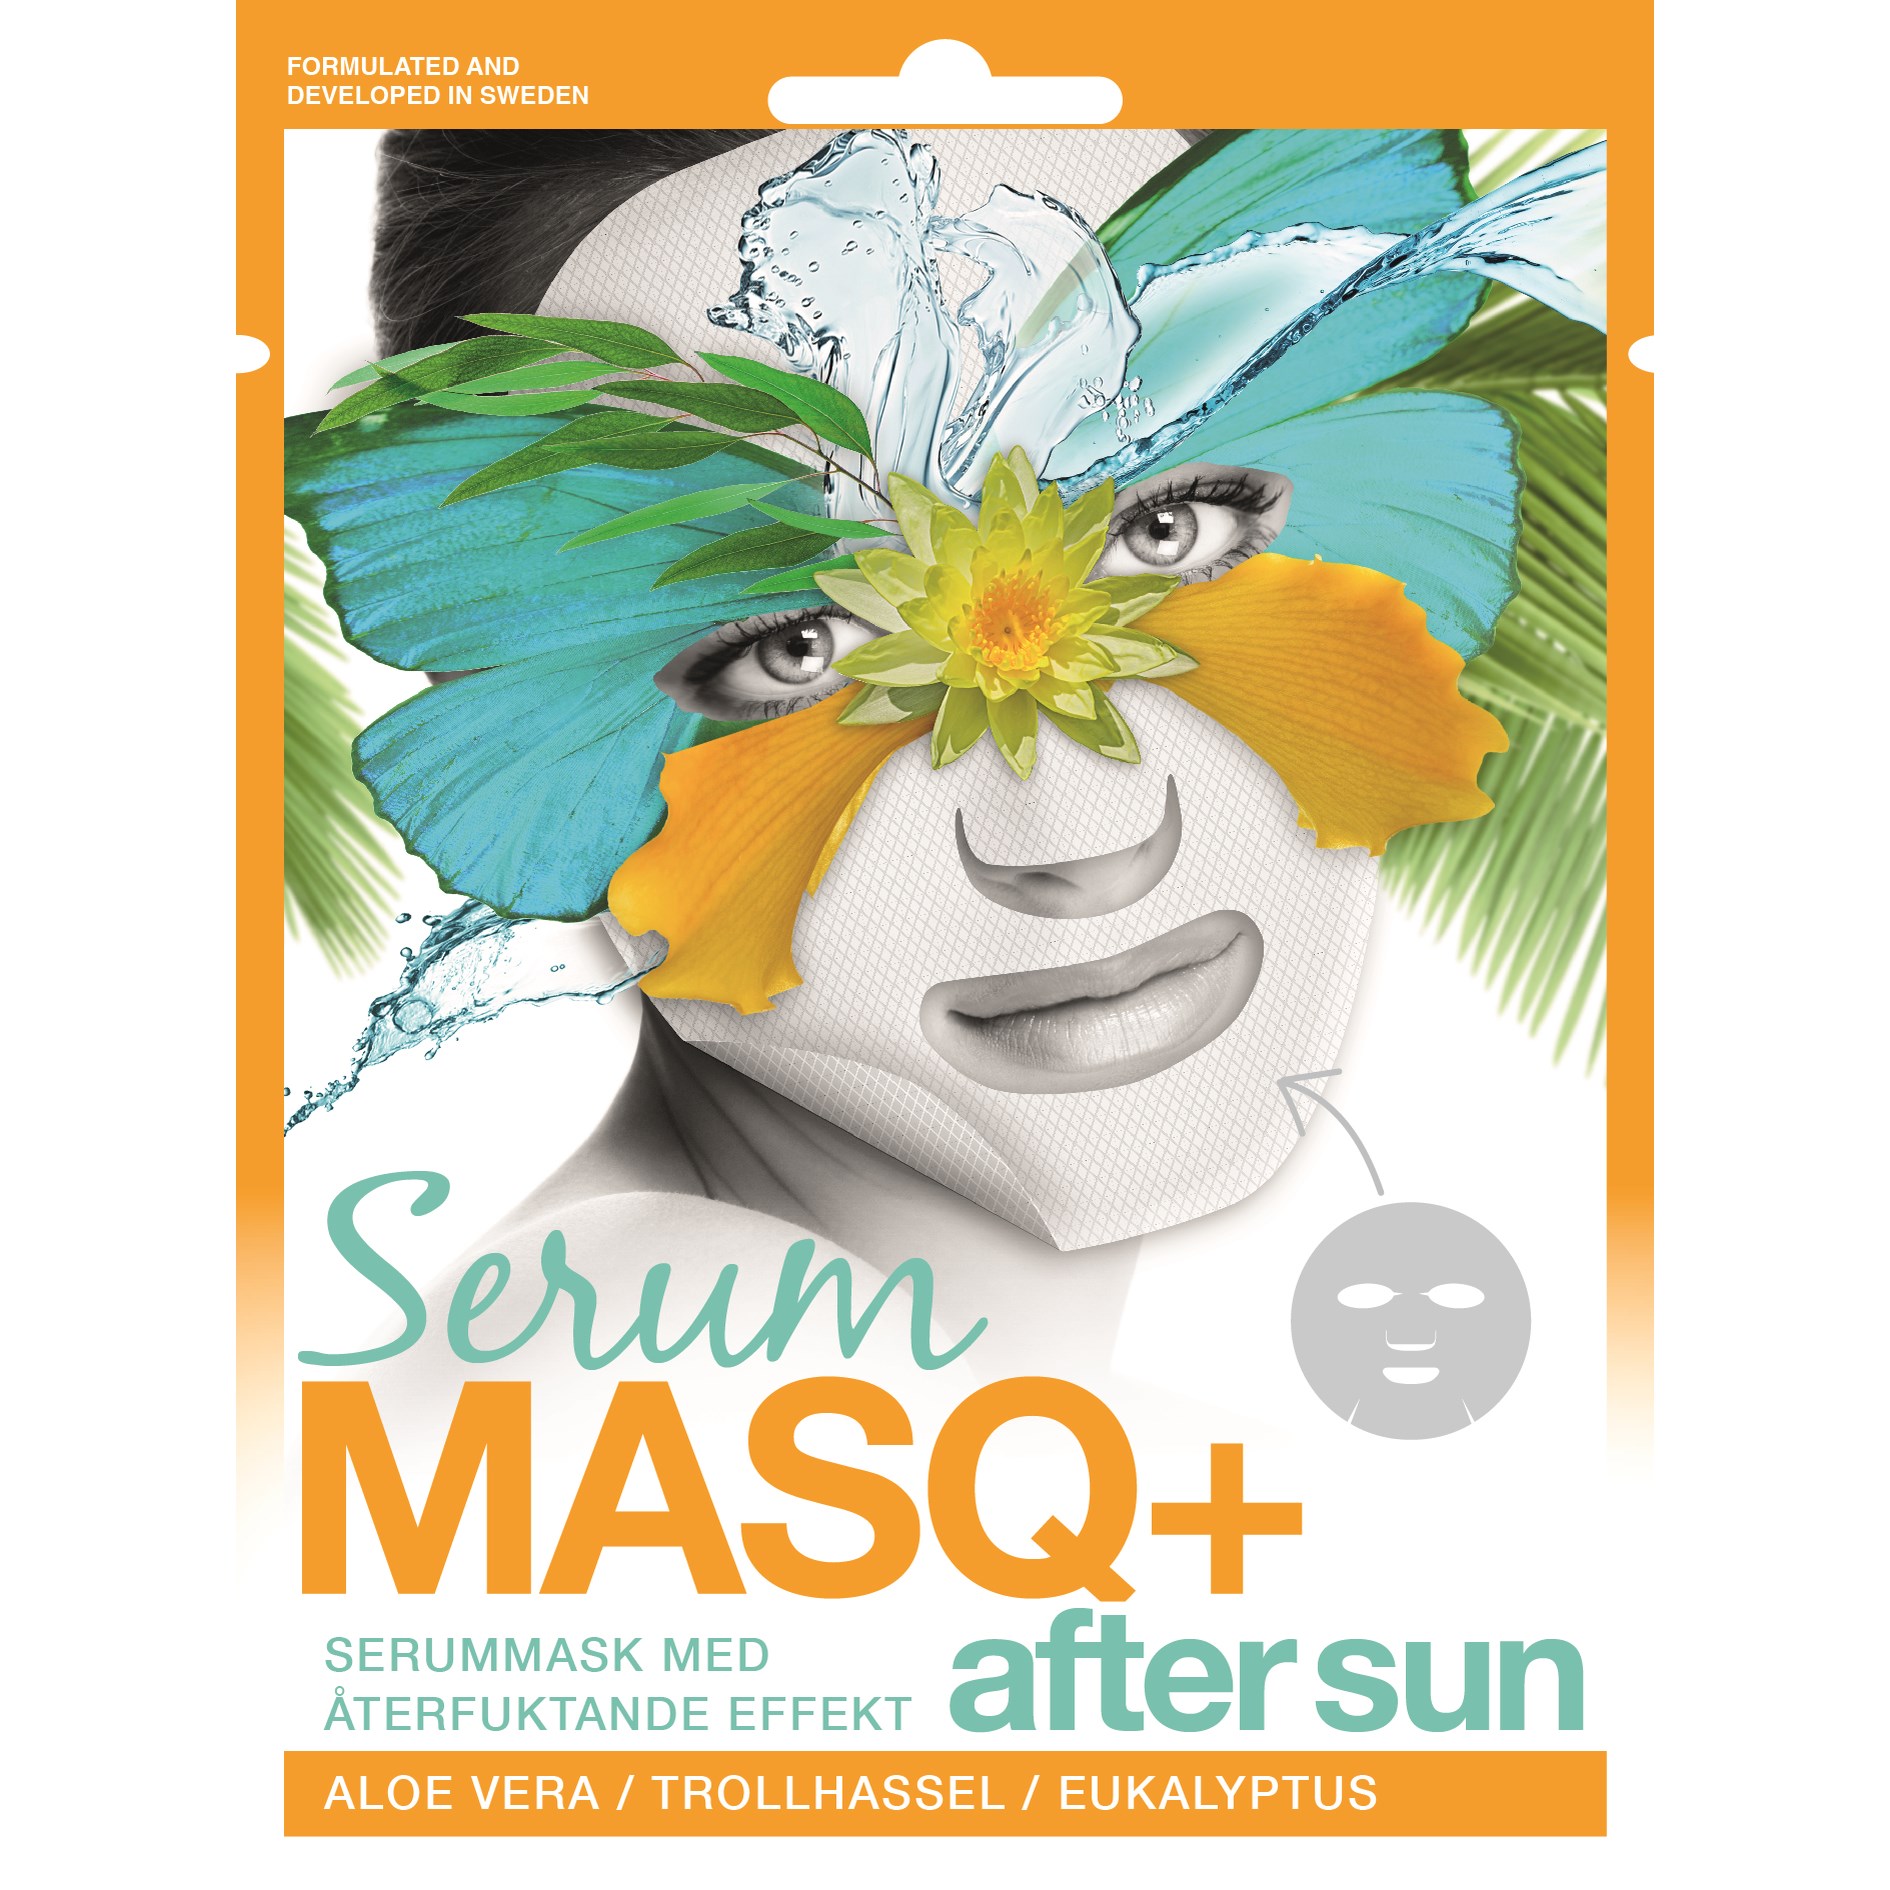 Bilde av Masq+ Serum Serum After Sun 1- Pack 23 Ml